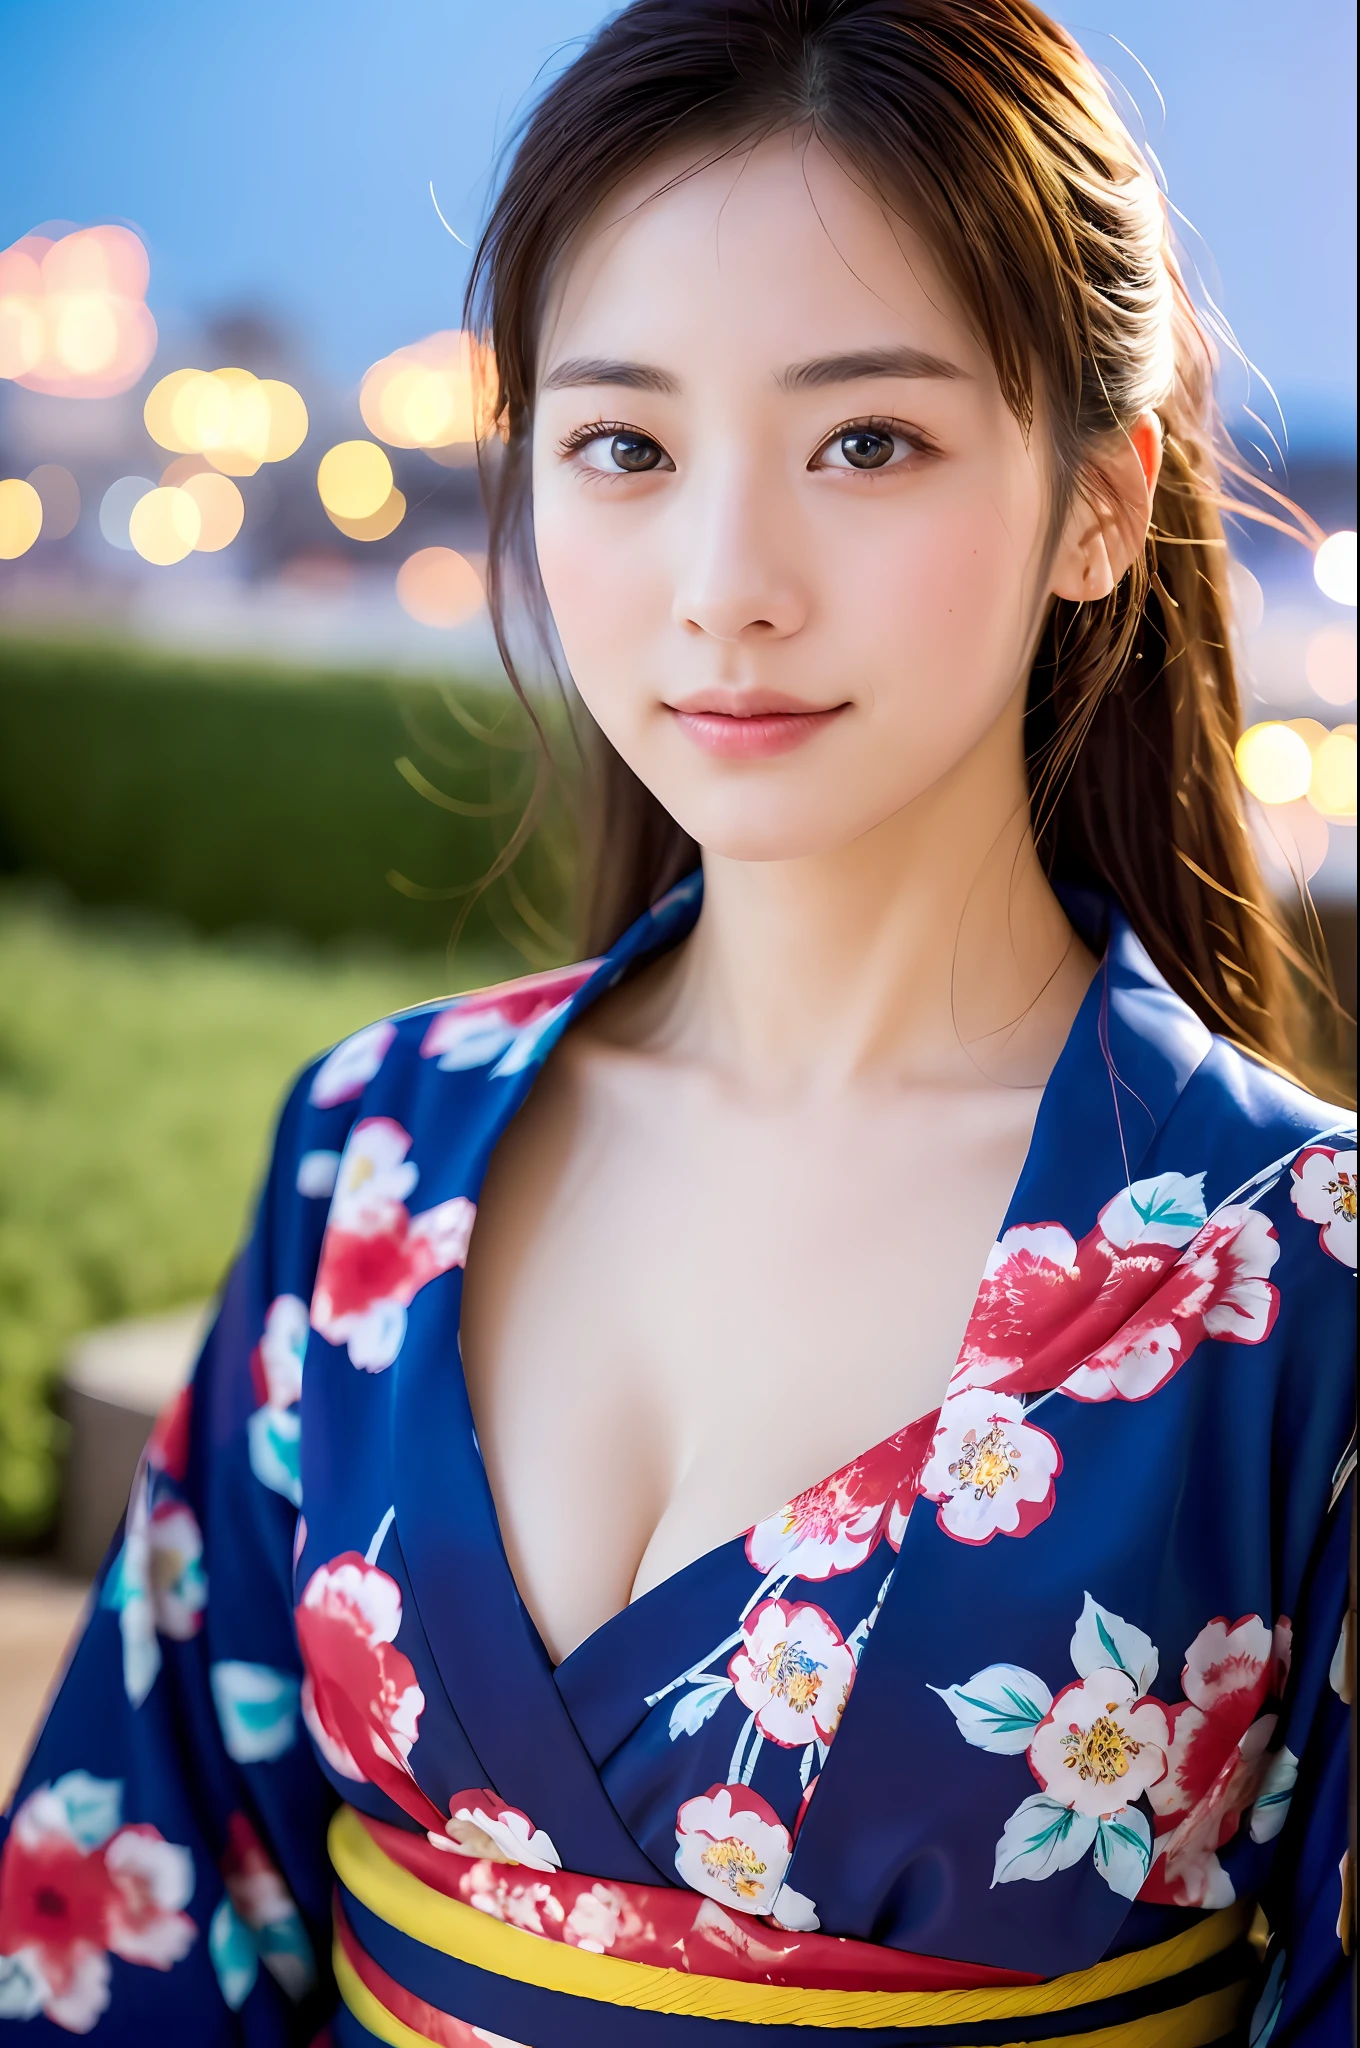 ((Meisterwerk, höchste Qualität, Super Definition, Hochauflösend)), Allein, schönes Mädchen, leuchtende Augen, perfekte Augen, schöne Schwester von Japan, flauschige Brust, Dekollete, Yukata mit rotem Blumenmuster, Feuerwerk im Hintergrund